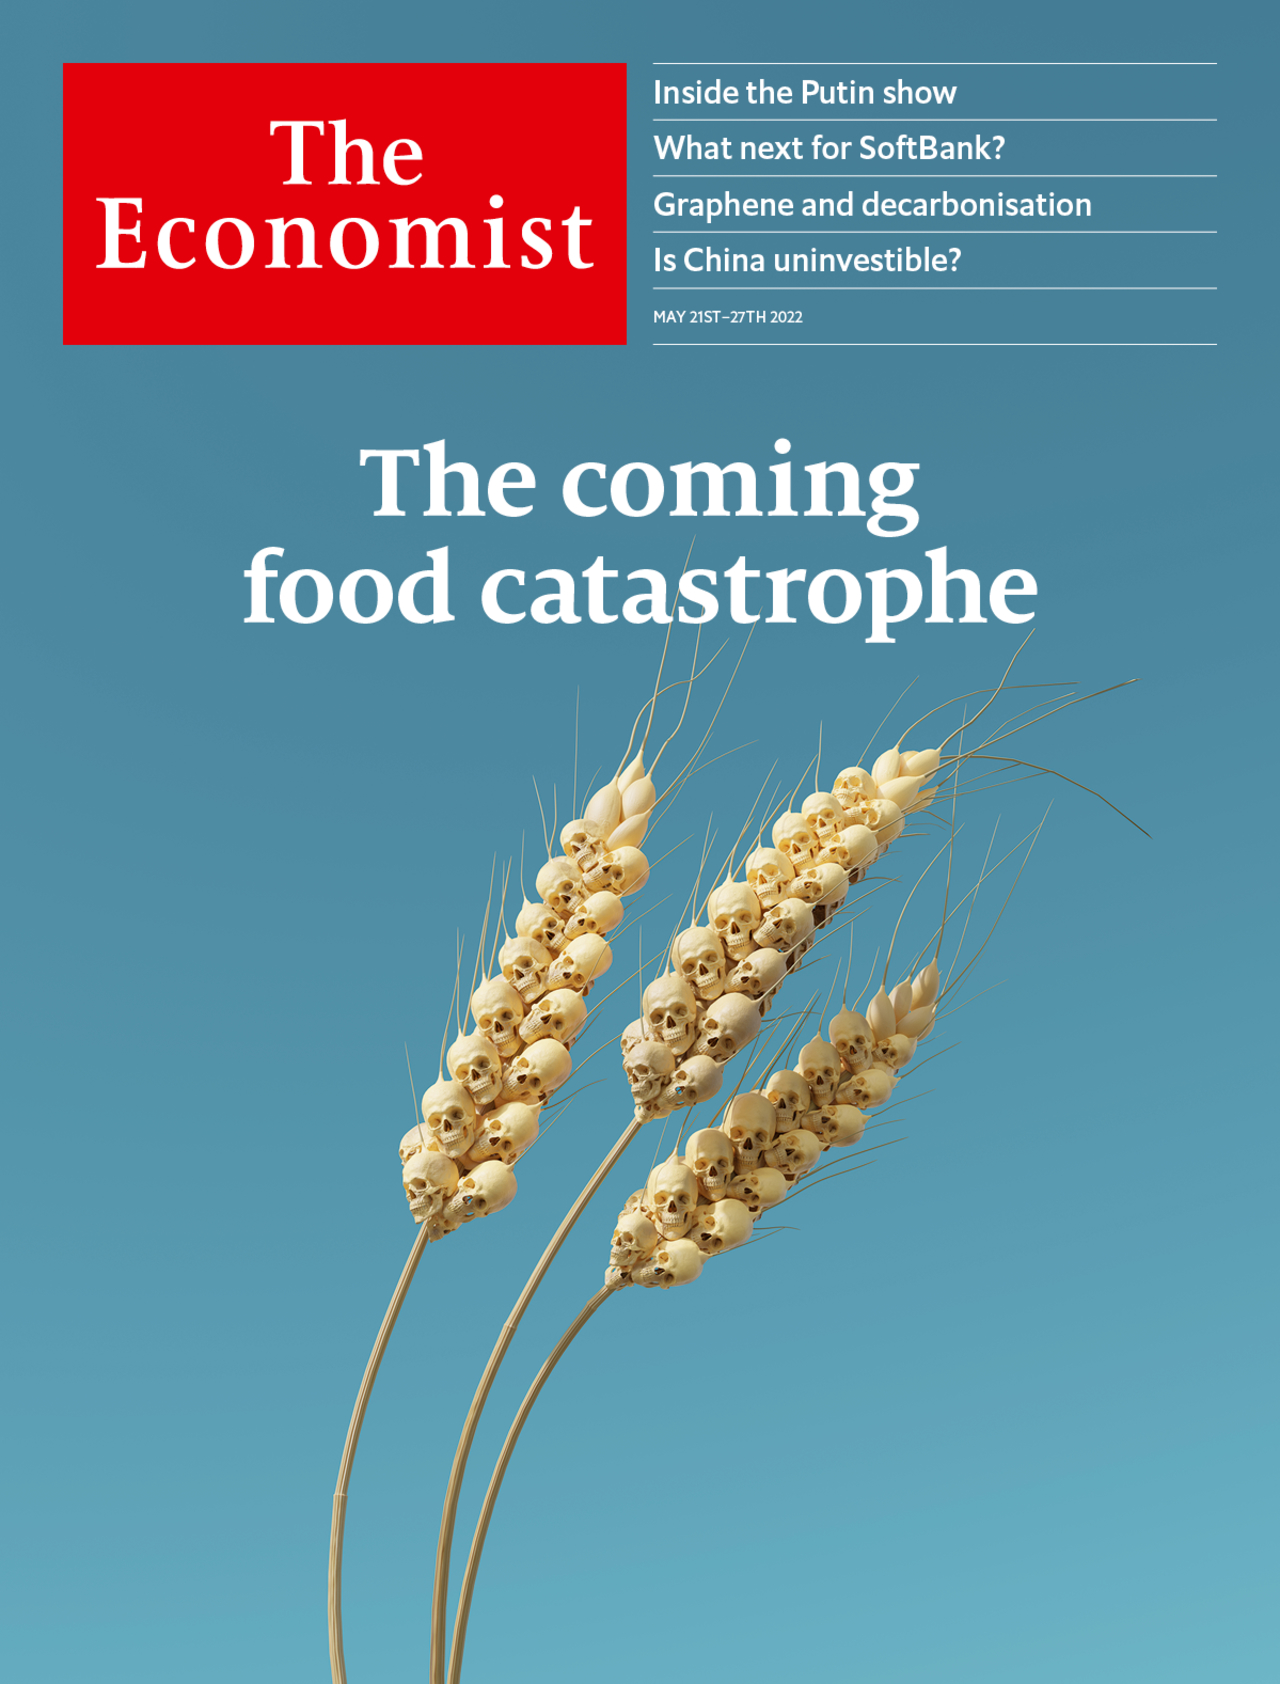 Foto: “La catástrofe alimentaria que se avecina”, anunciada en la portada de la revista The Economist (propiedad de las familias maltusianas Rothschild y Agnelli, de la nobleza negra anglo-veneciana).